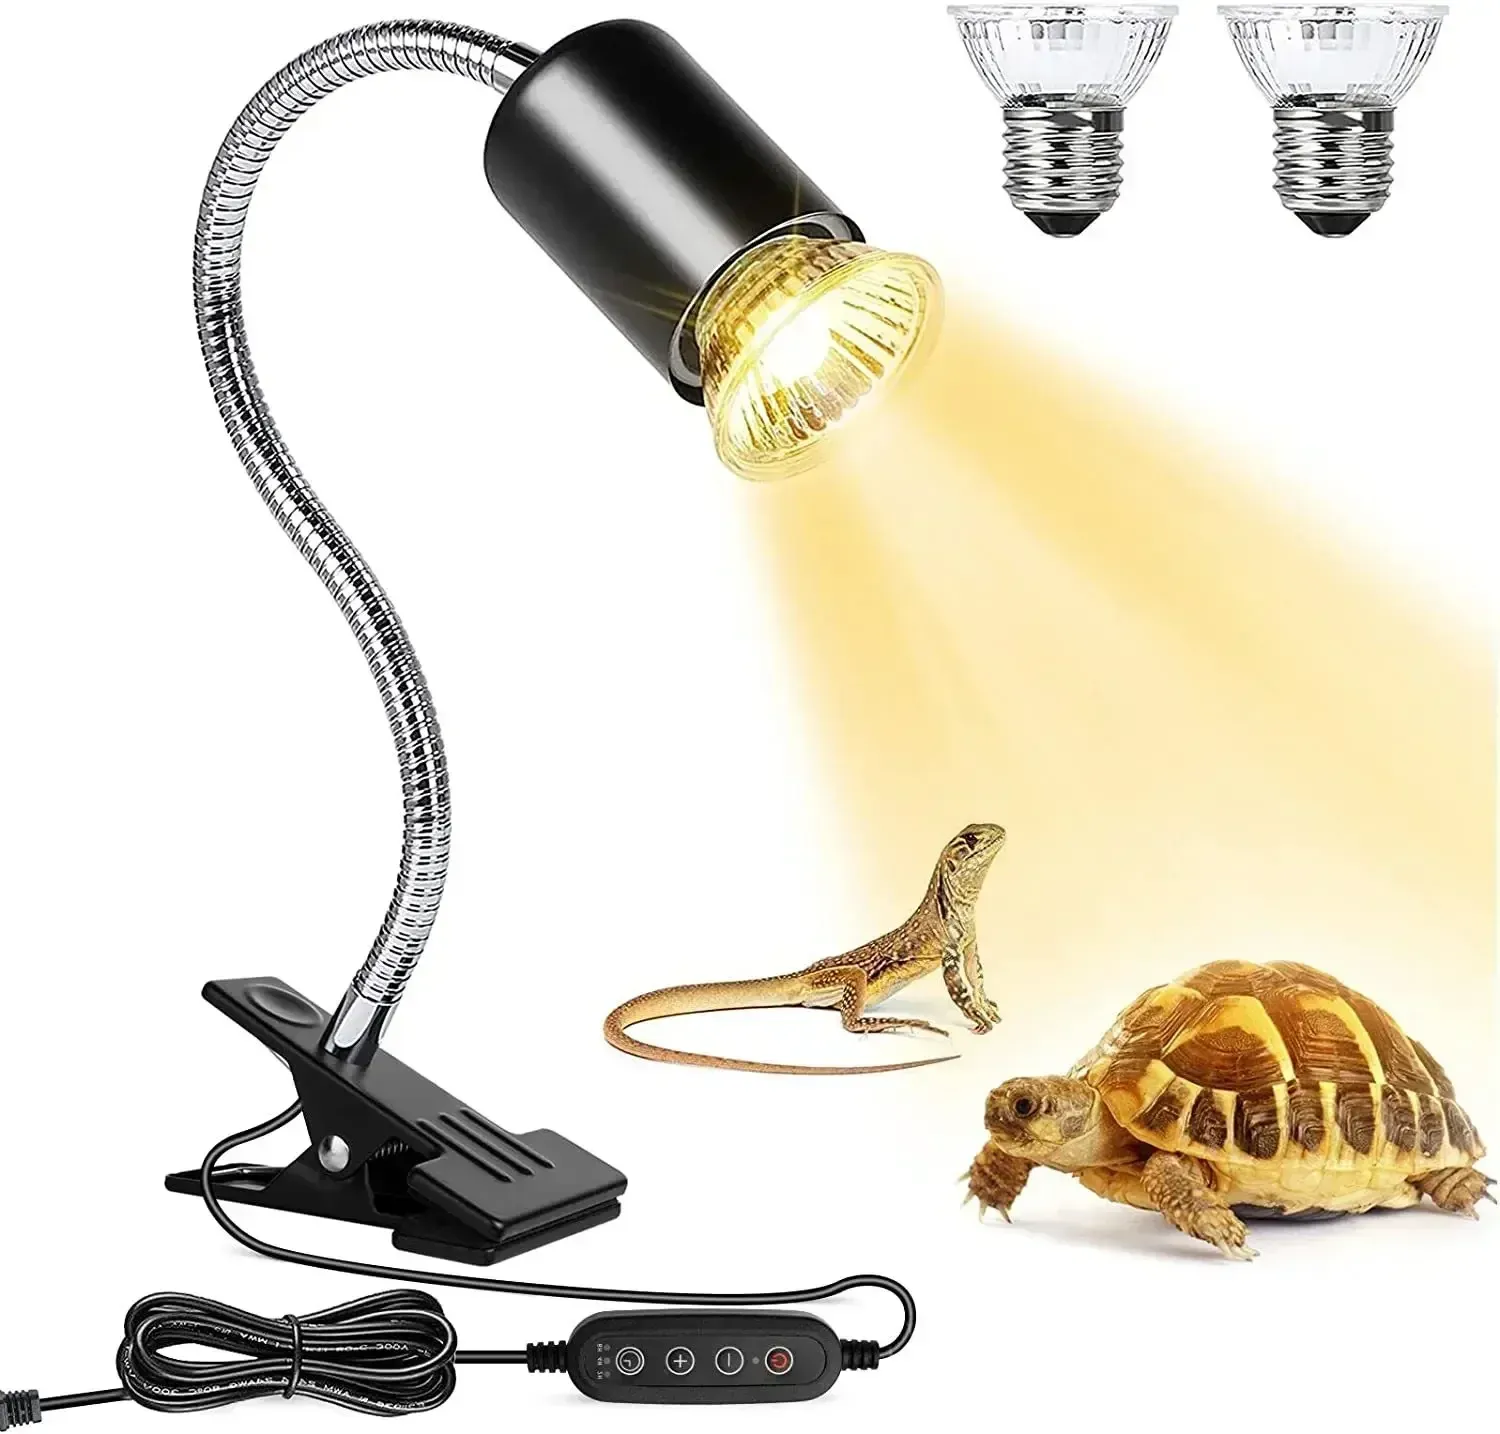 Iluminações 50W lâmpada halógena incluída lâmpada de calor para répteis ajustável gooseneck tanque de aquário lâmpadas de aquecimento para tartaruga lagarto cobra terrário